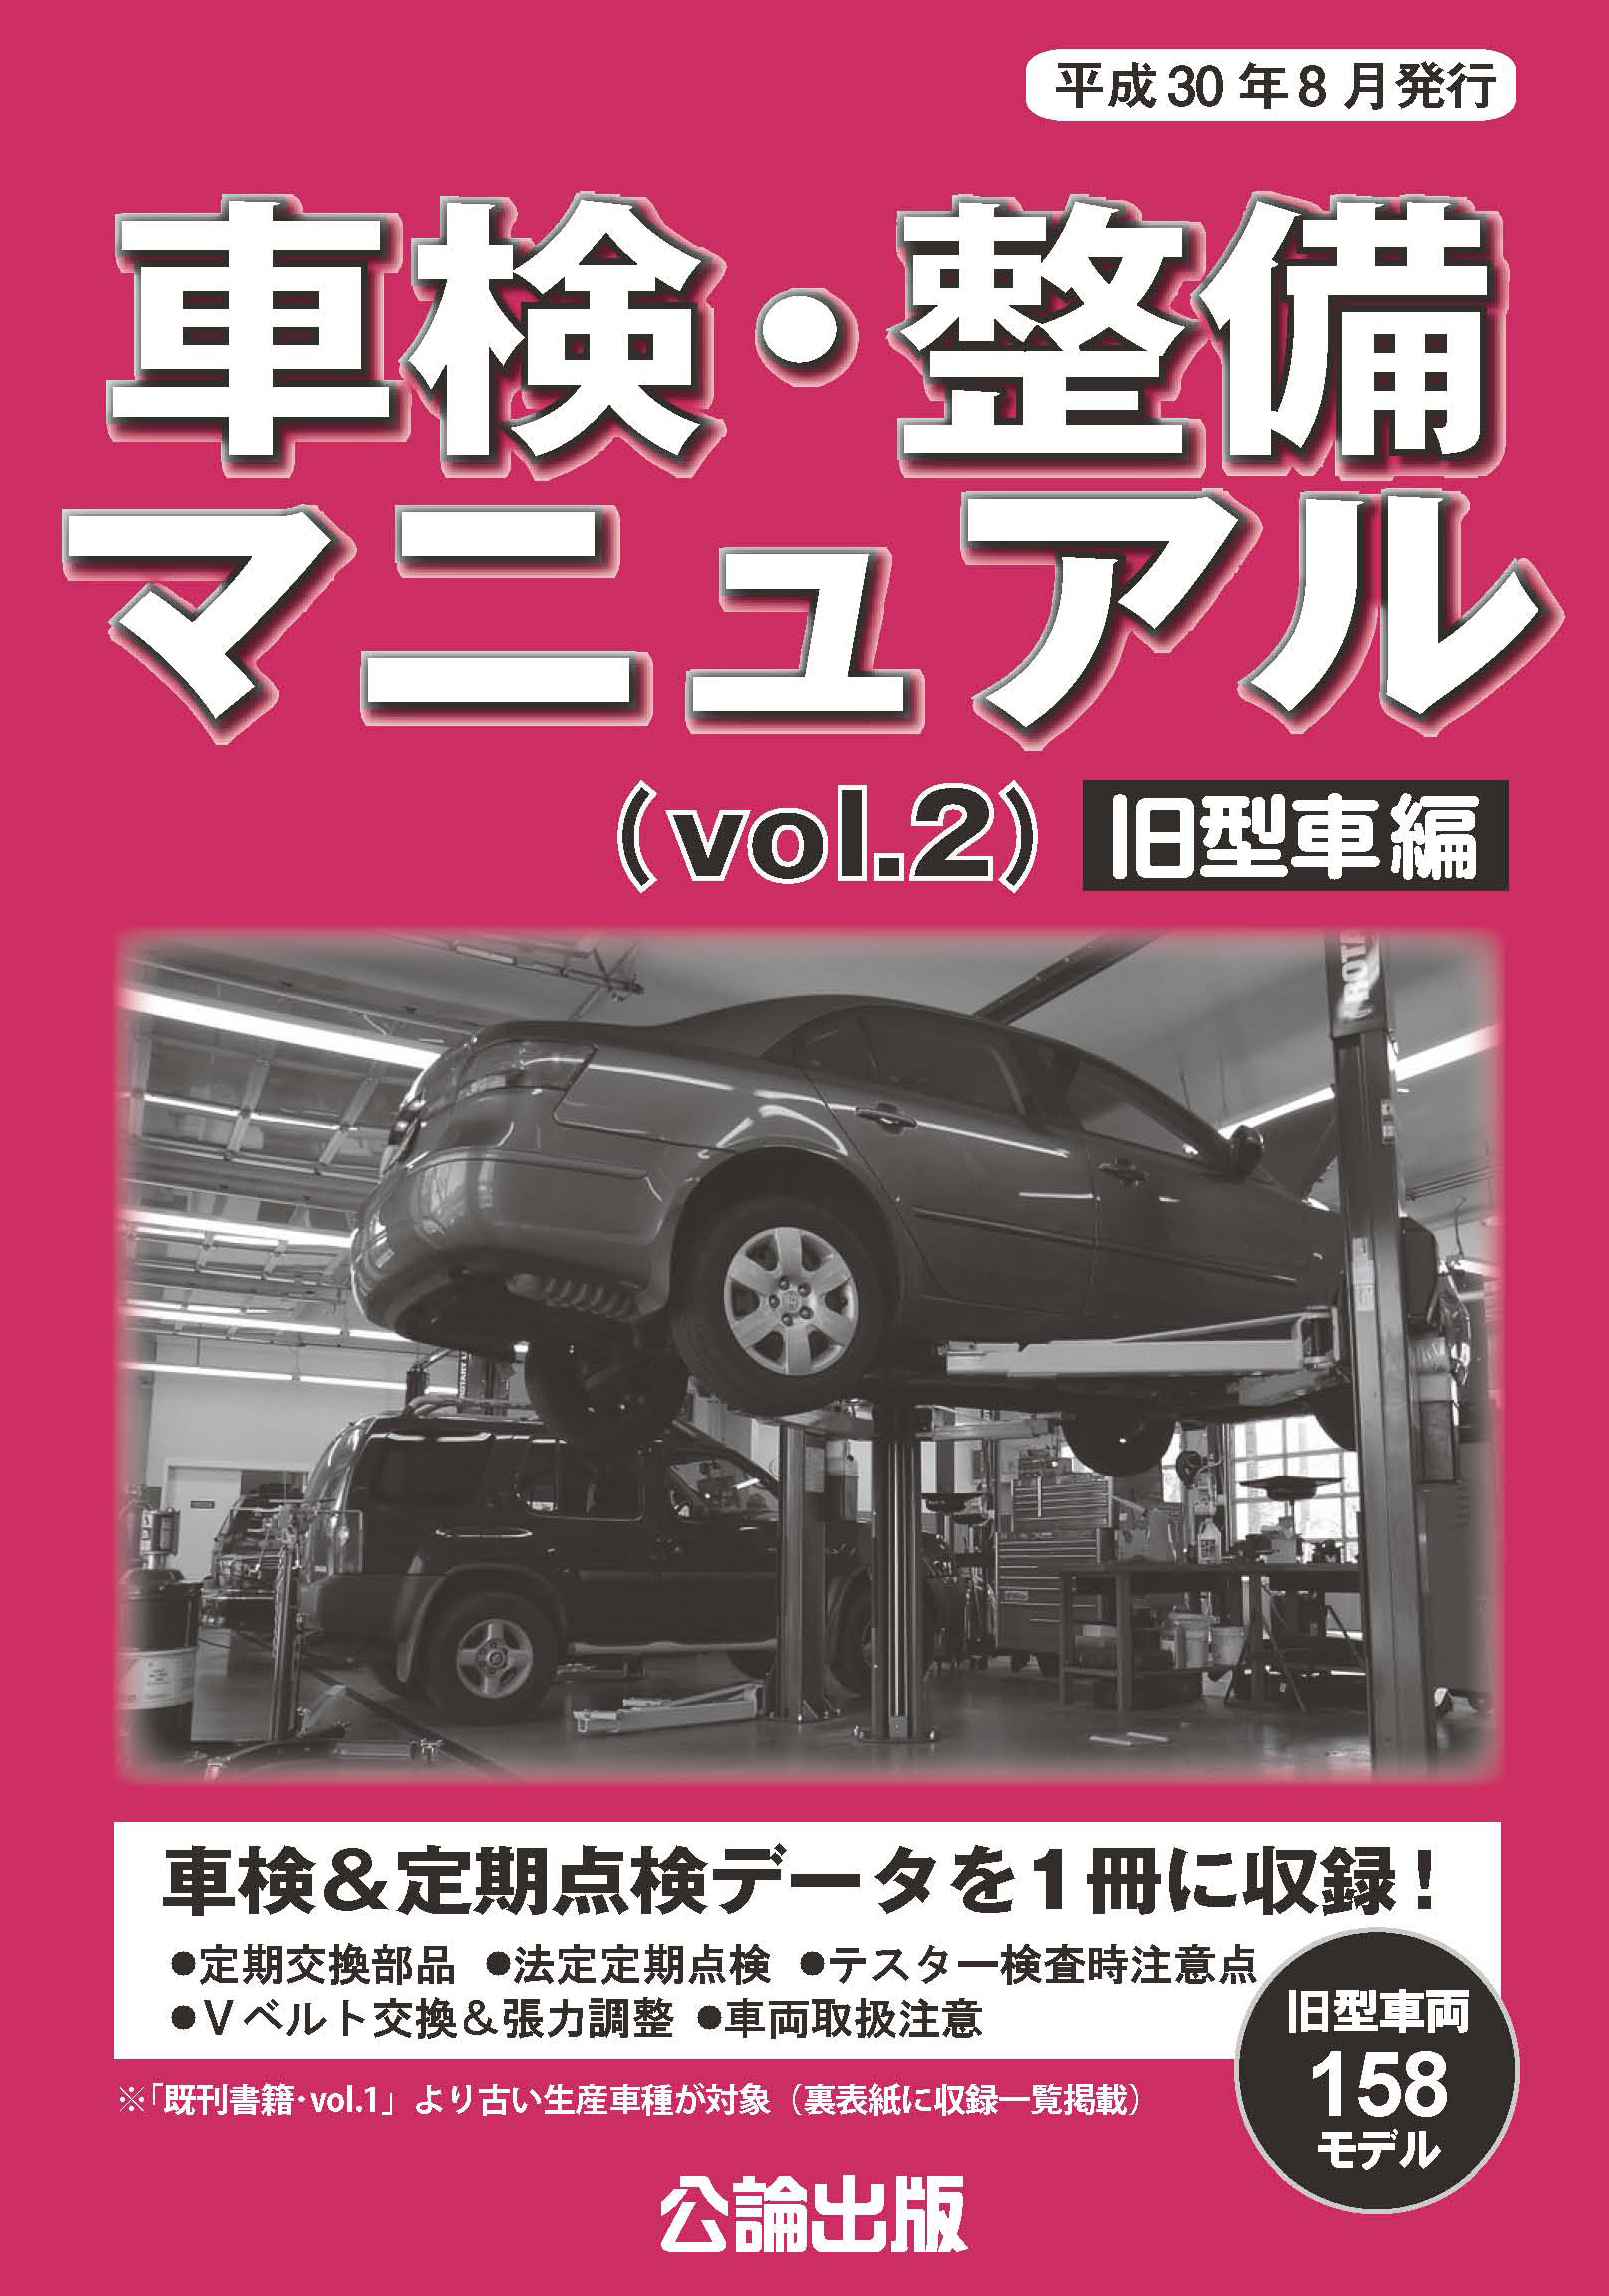 車検・整備マニュアル (vol.2)旧型車編